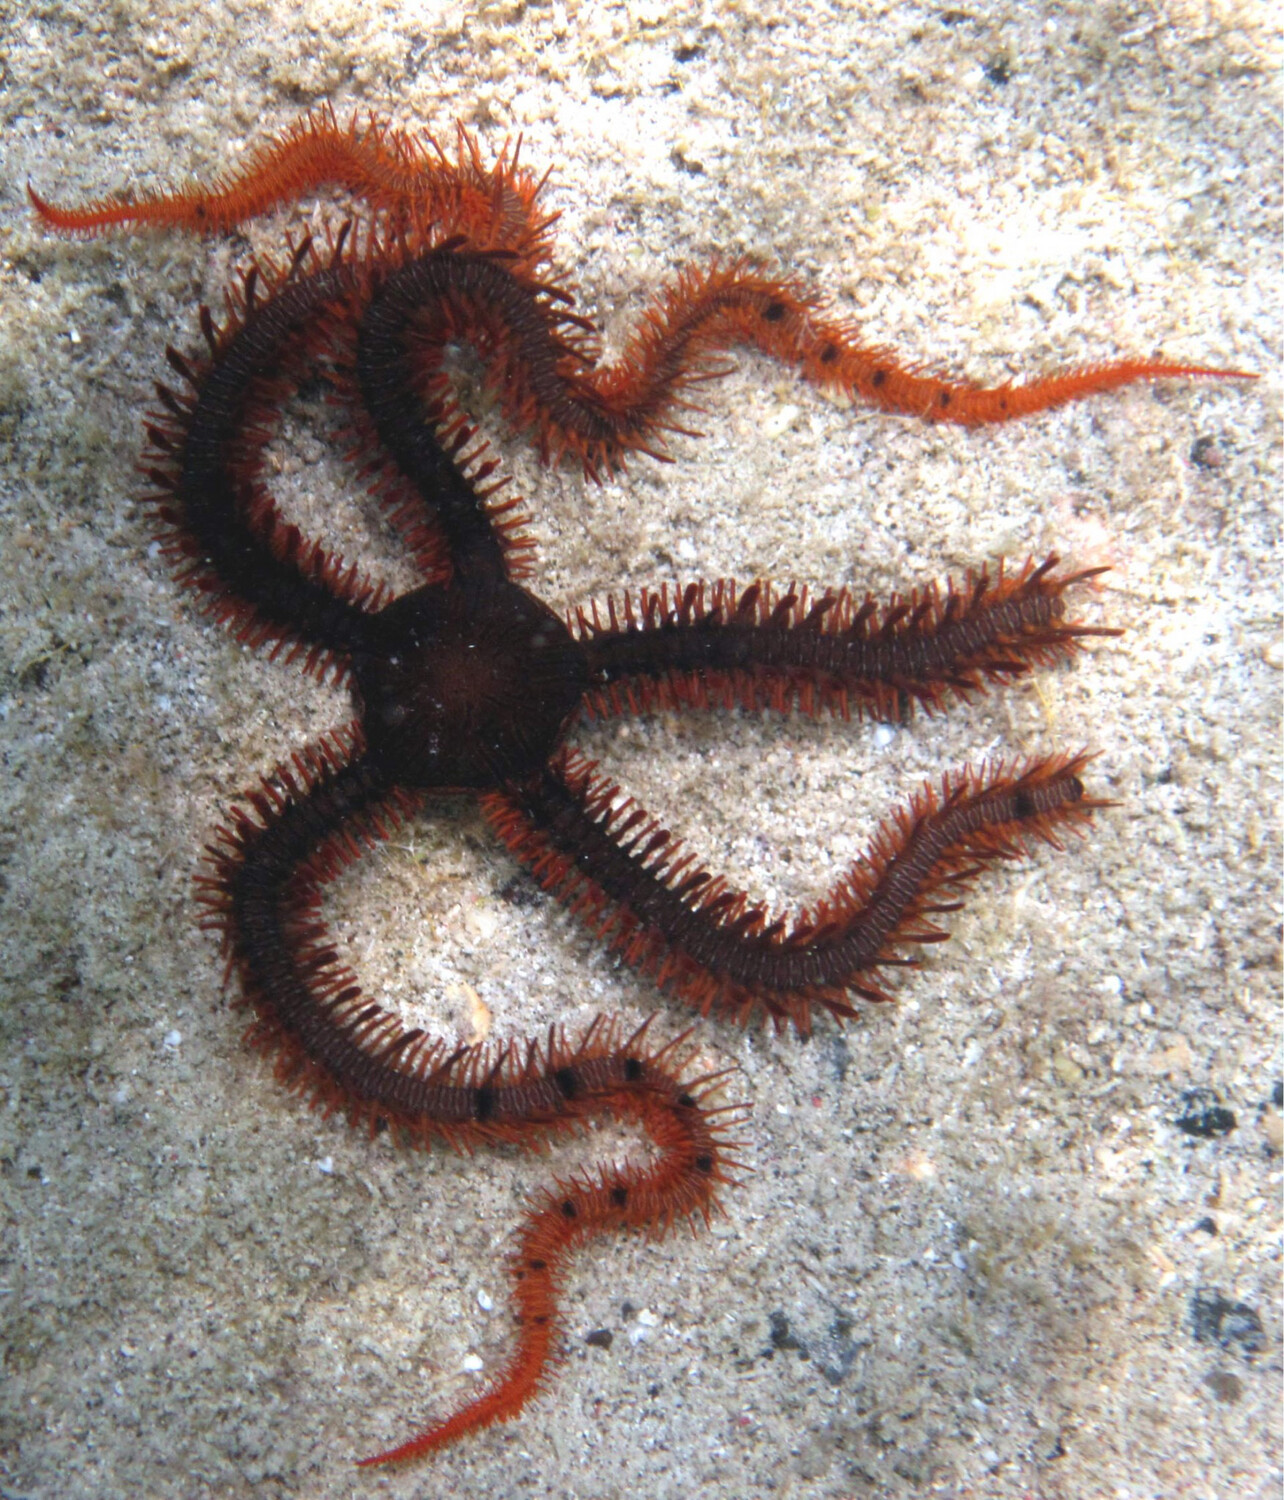 Assorted Brittle Starfish